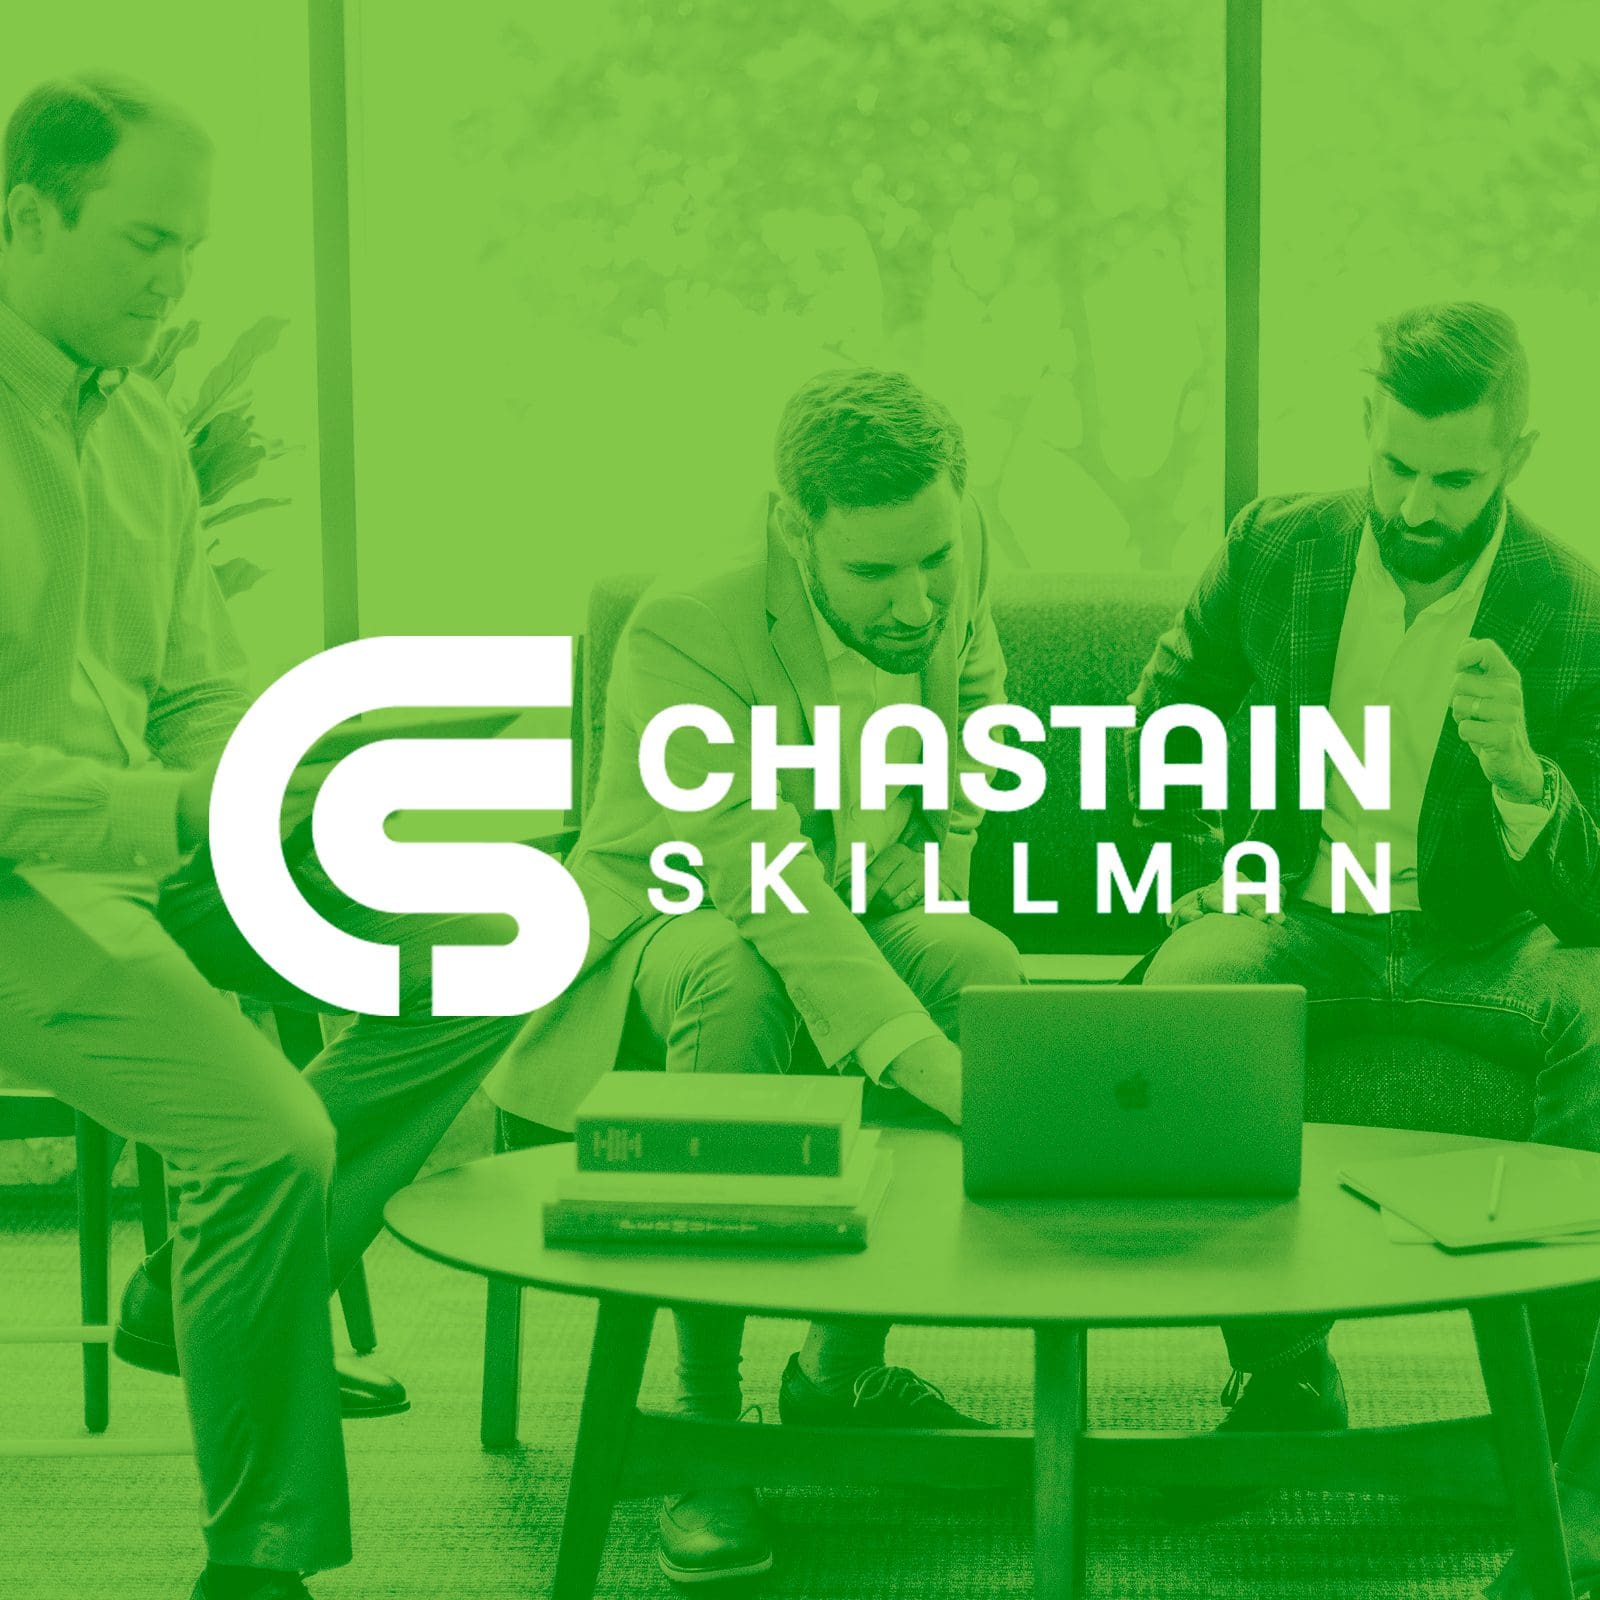 Website Design in Nashville - Chastain Skillman